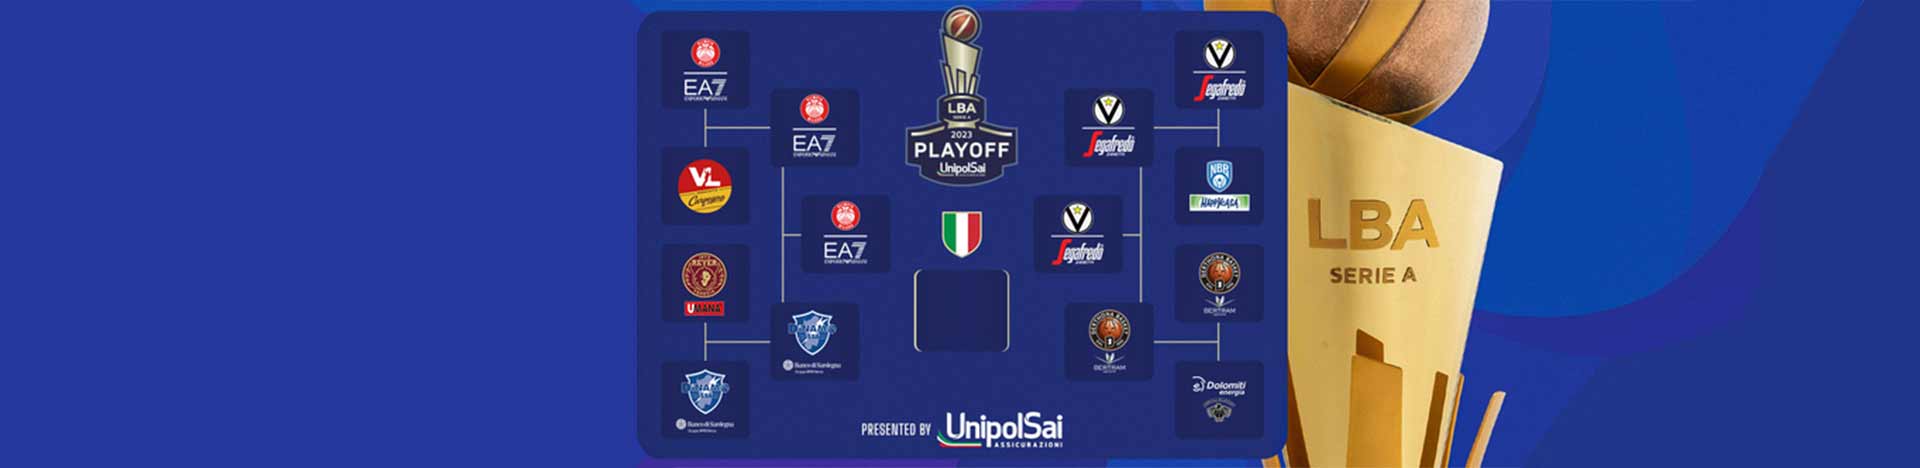 Serie A UnipolSai 2022/23 Finale playoff Gara5: <br>tabellone, risultati e programma prossime gare